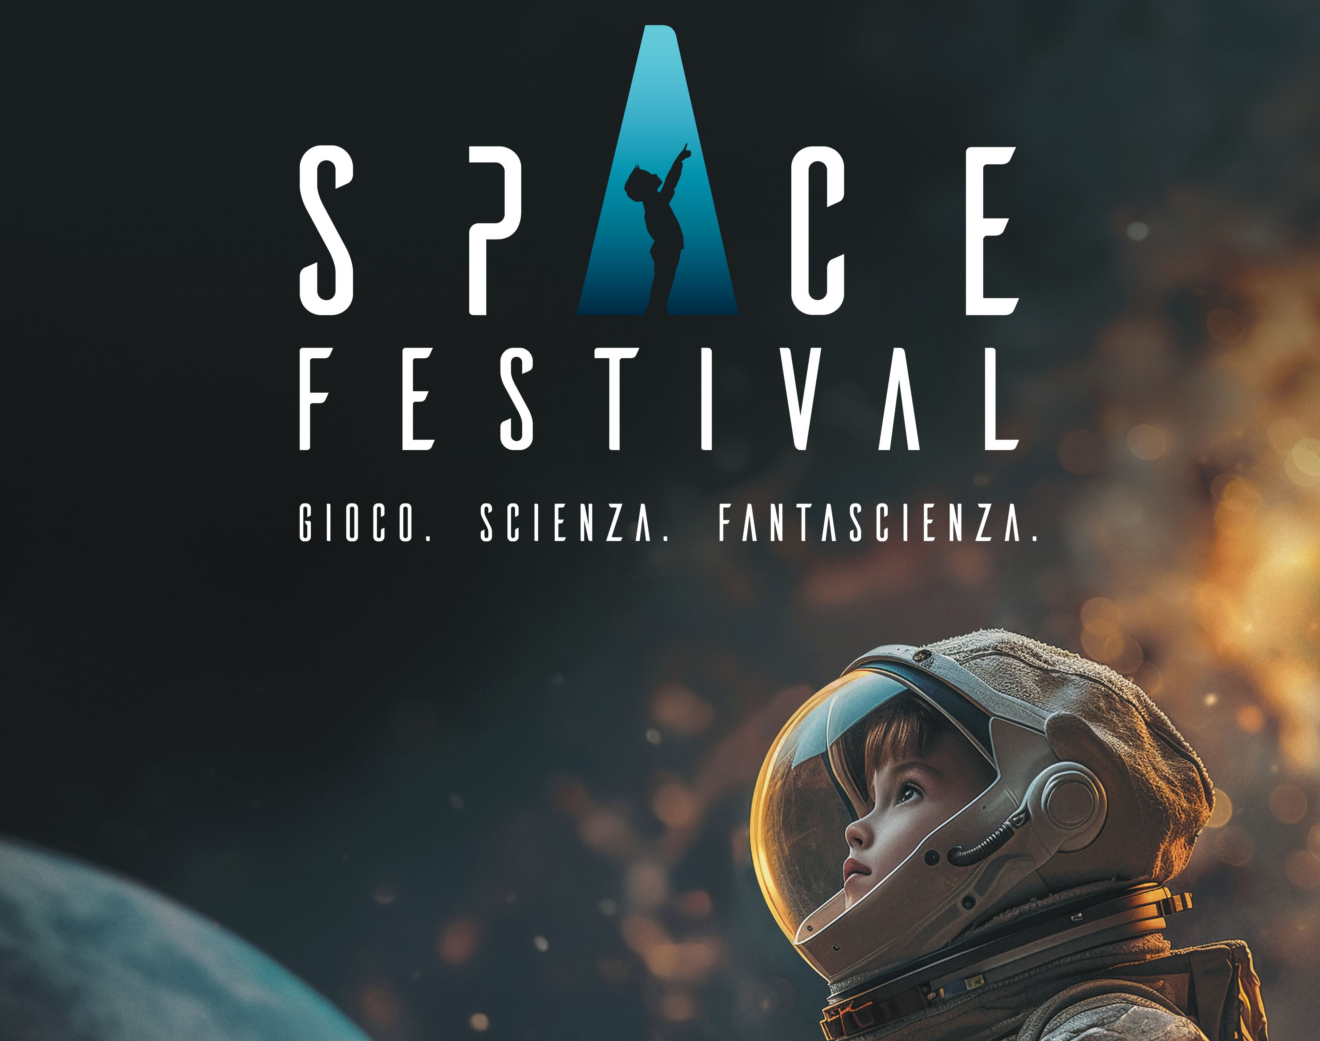 Torna a Torino dal 16 al 19 maggio Space Festival Gioco, Scienza, Fantascienza